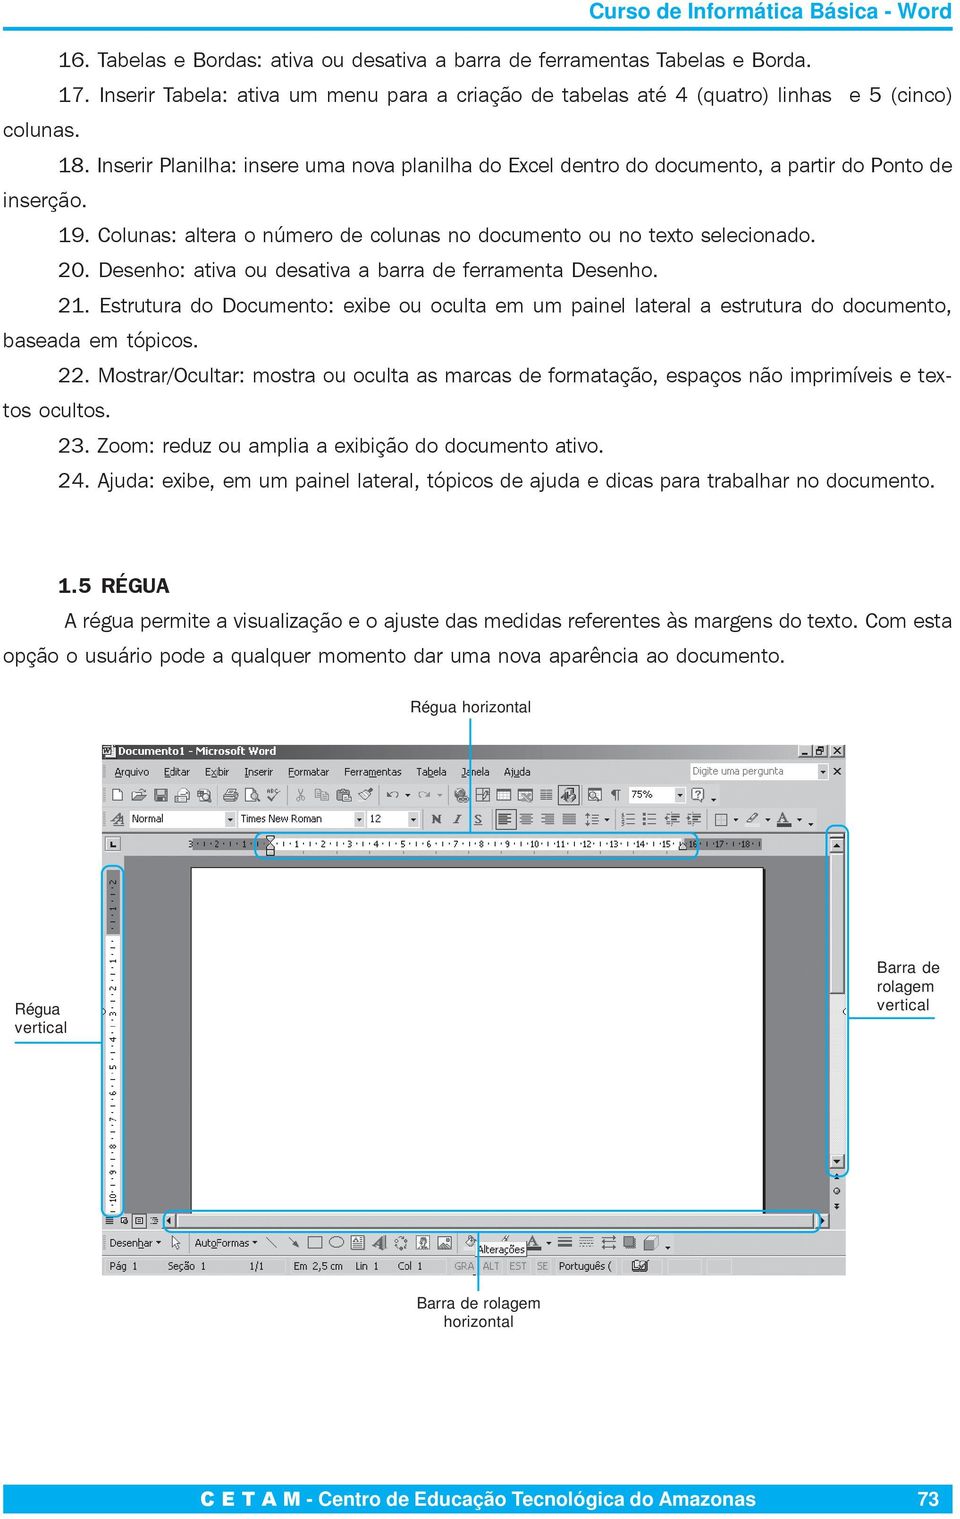 Desenho: ativa ou desativa a barra de ferramenta Desenho. 21. Estrutura do Documento: exibe ou oculta em um painel lateral a estrutura do documento, baseada em tópicos. 22.